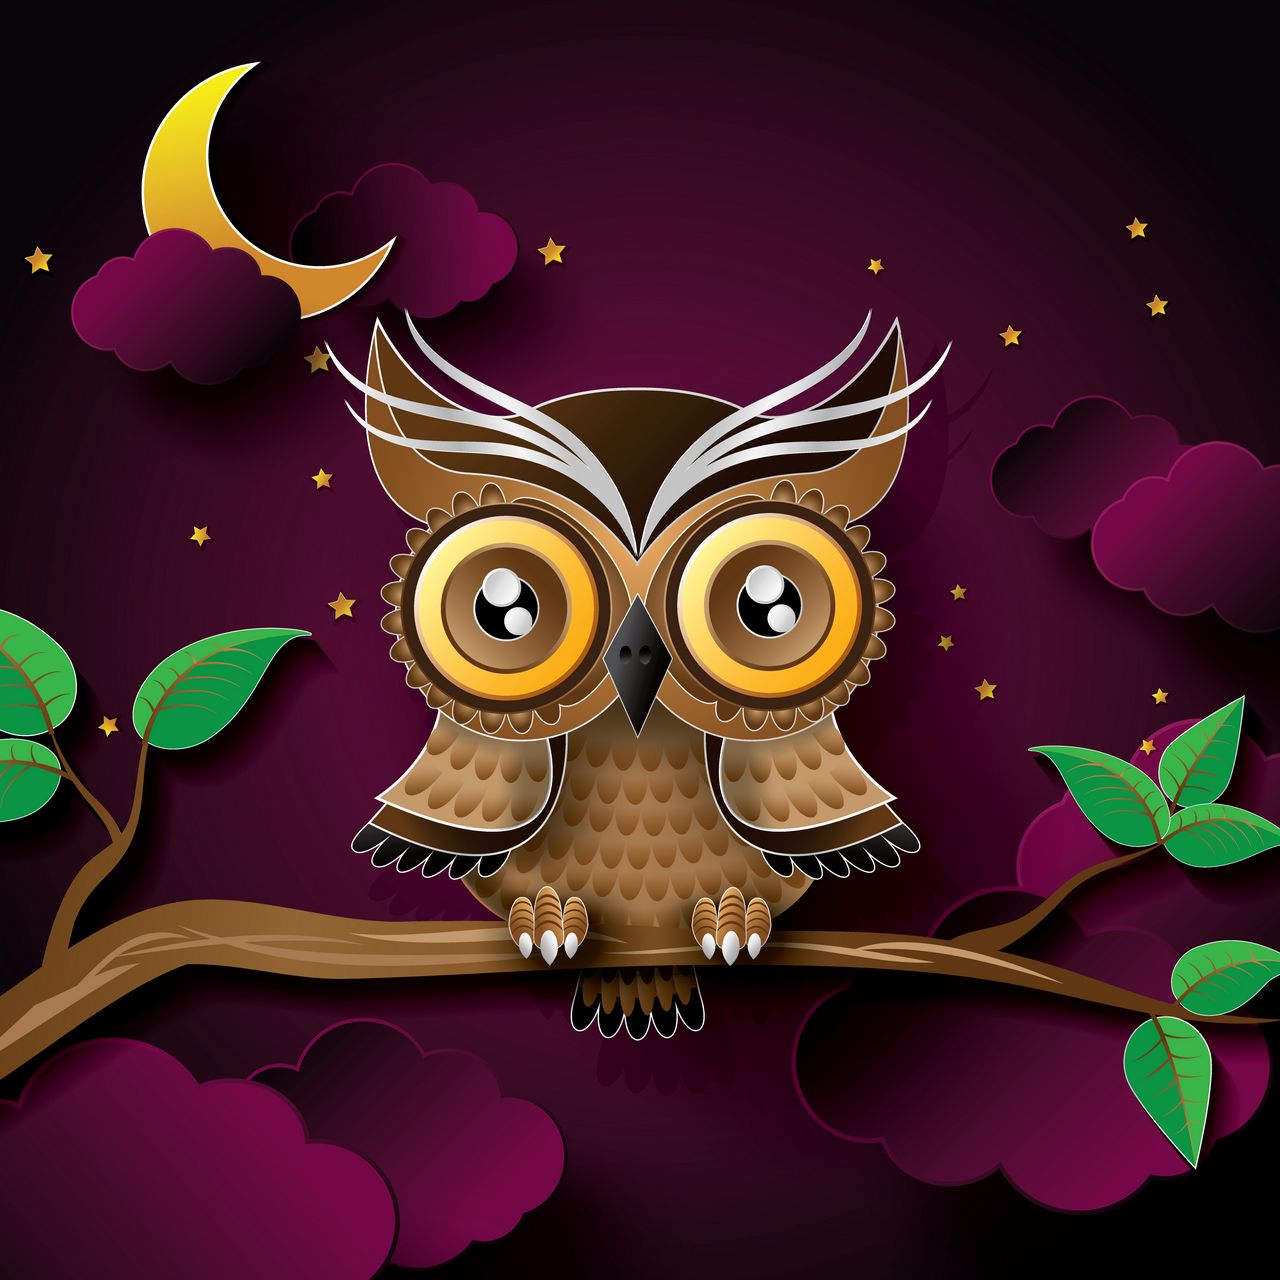 Download wallpaper 1280x1280 owl, bird, art, branch ipad, ipad 2, ipad mini  for parallax hd background